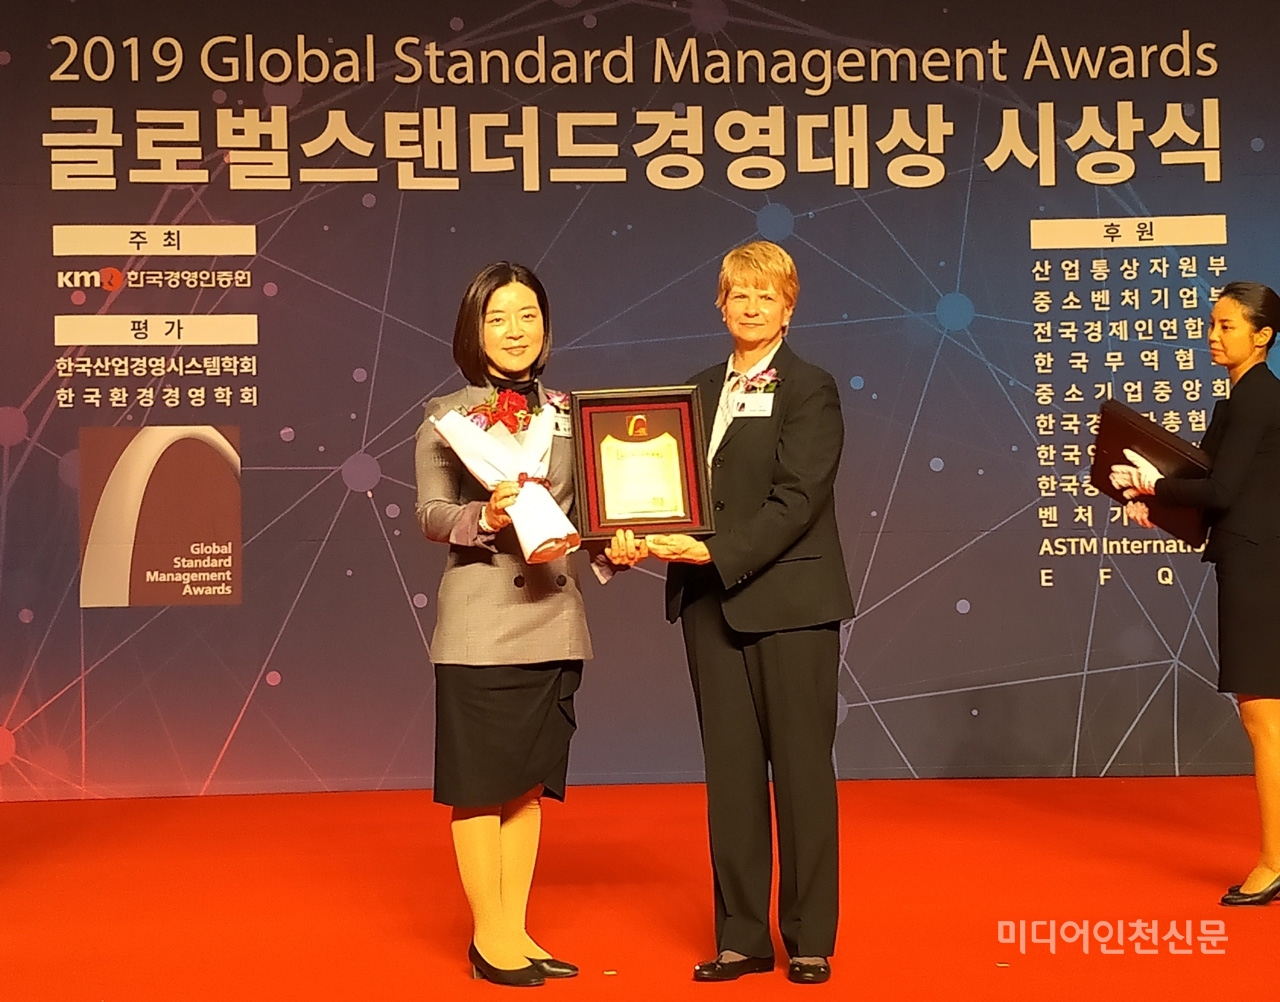 30일 오전 서울 그랜드힐튼 컨벤션센터에서 열린 ‘2019 Global Standard Management Awards(GSMA) 시상식’에서 인천공항공사 최민아 사회가치추진실장(사진 왼쪽)이 보고서 부문 지속가능경영대상을 수상한 후 기념촬영을 하고 있다. [사진제공 = 인천공항공사]